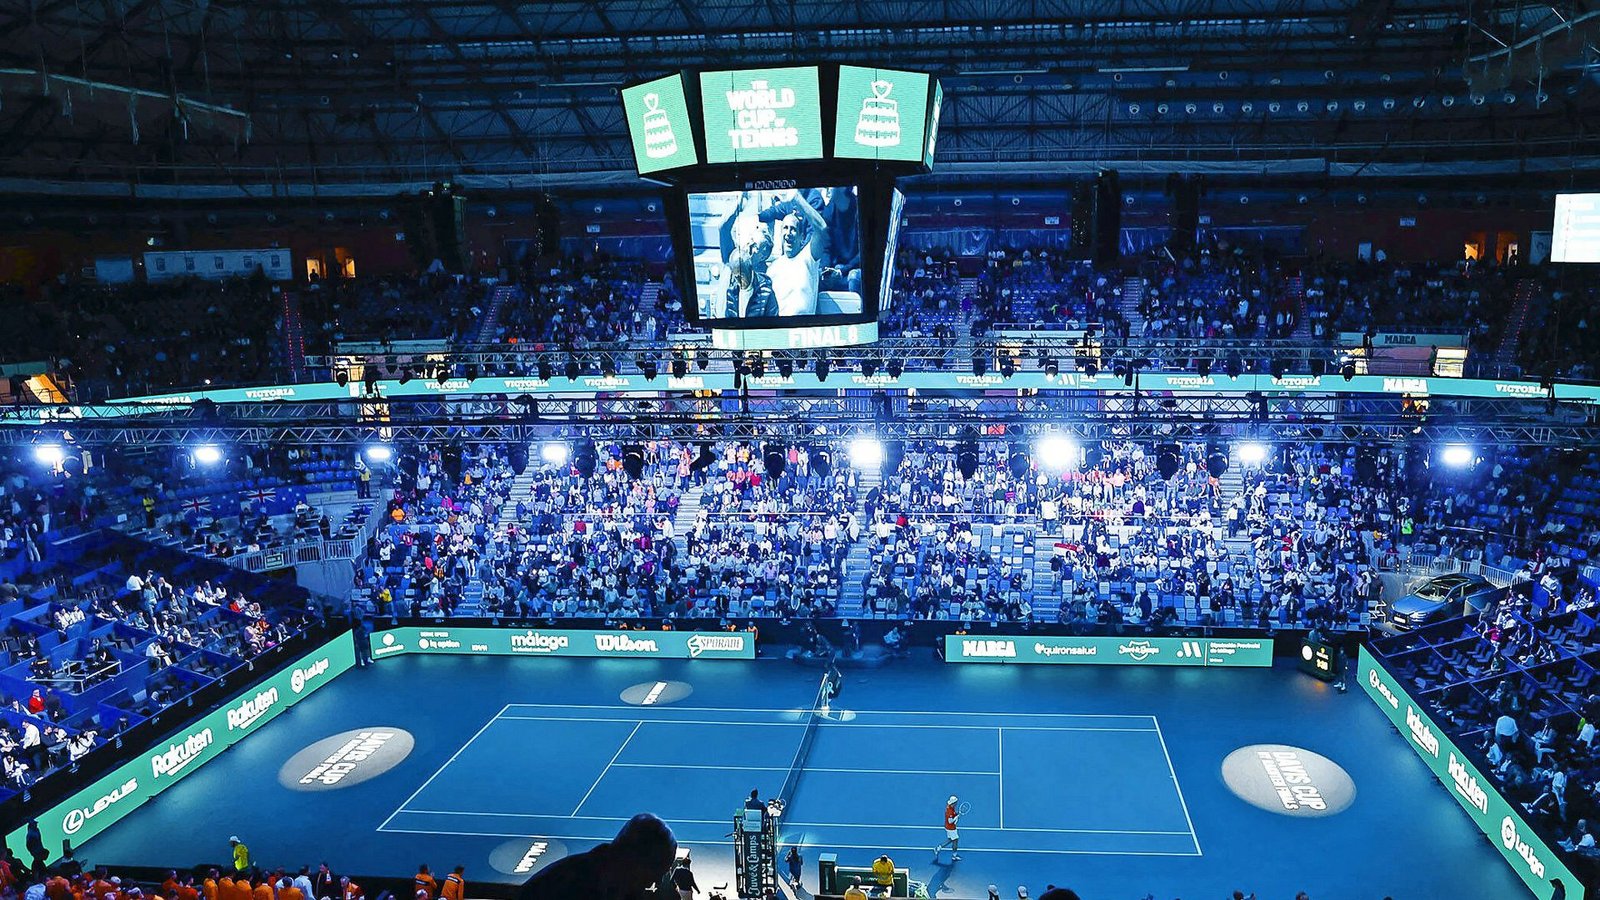 Grelles Scheinwerferlicht und große finanzielle Versprechen: Trotzdem kommen kaum Fans zur Daviscup-Endrunde.Foto: IMAGO/Juergen Hasenkopf